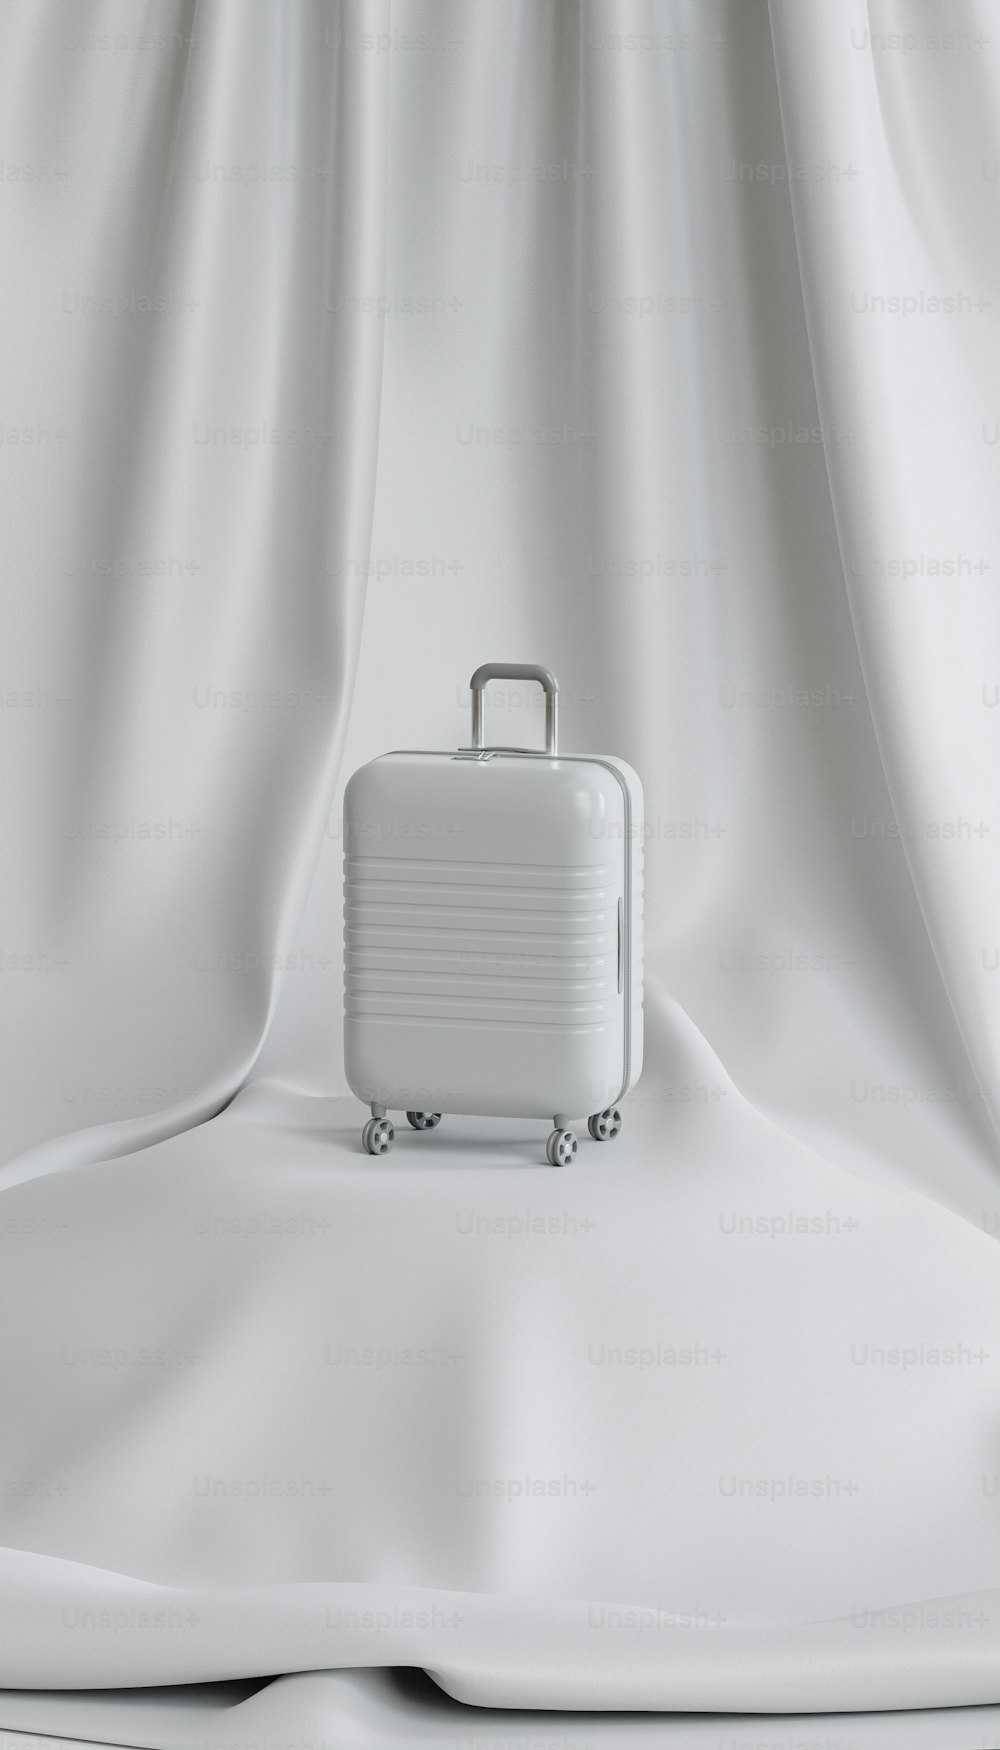 Una maleta blanca encima de una sábana blanca